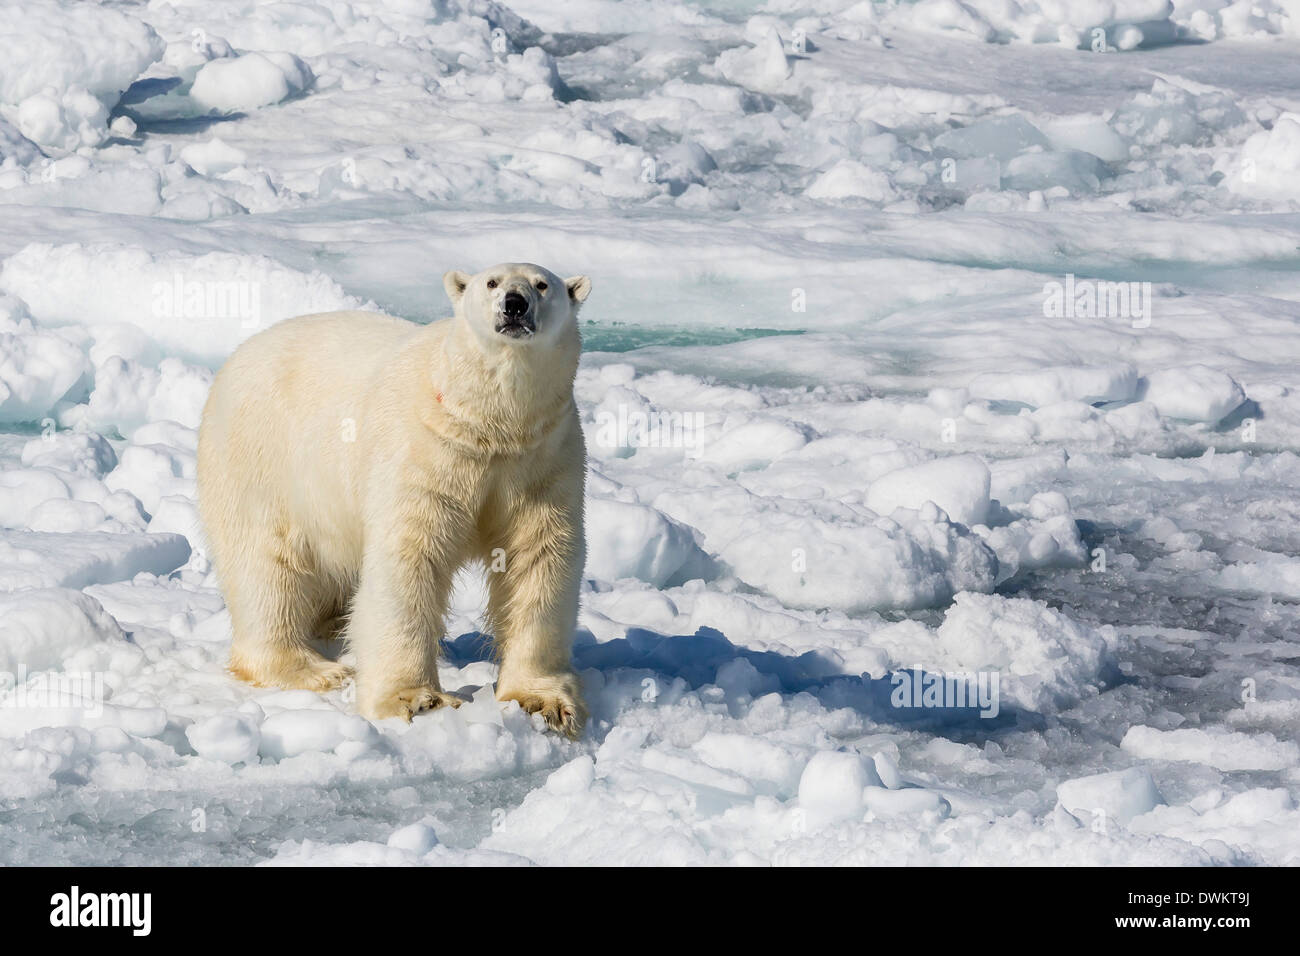 Des profils l'ours polaire (Ursus maritimus) sur la banquise, la péninsule de Cumberland, l'île de Baffin, Nunavut, Canada, Amérique du Nord Banque D'Images